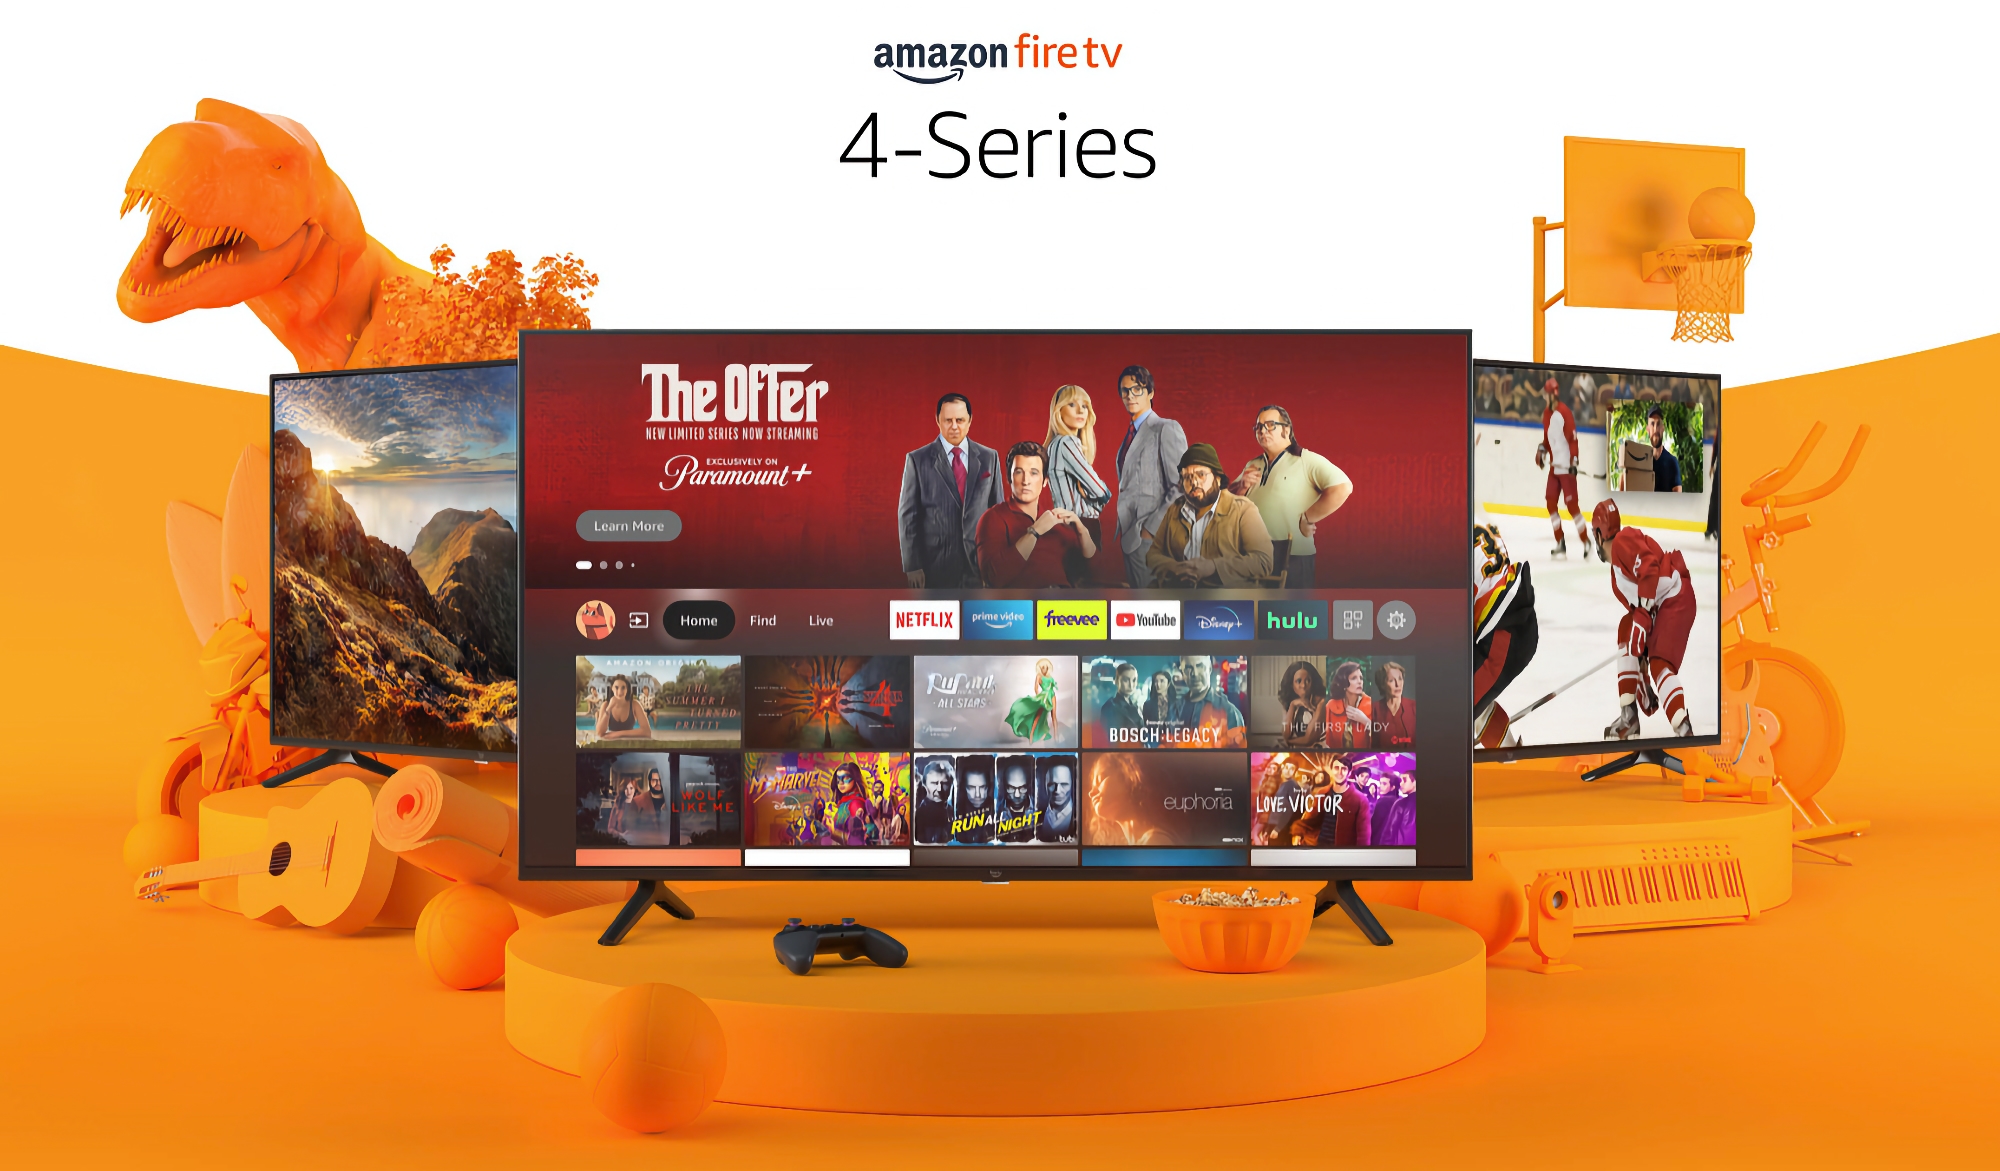 Amazon Fire TV con 55 pollici, risoluzione 4K e Alexa integrata è disponibile a un prezzo scontato di 180 dollari